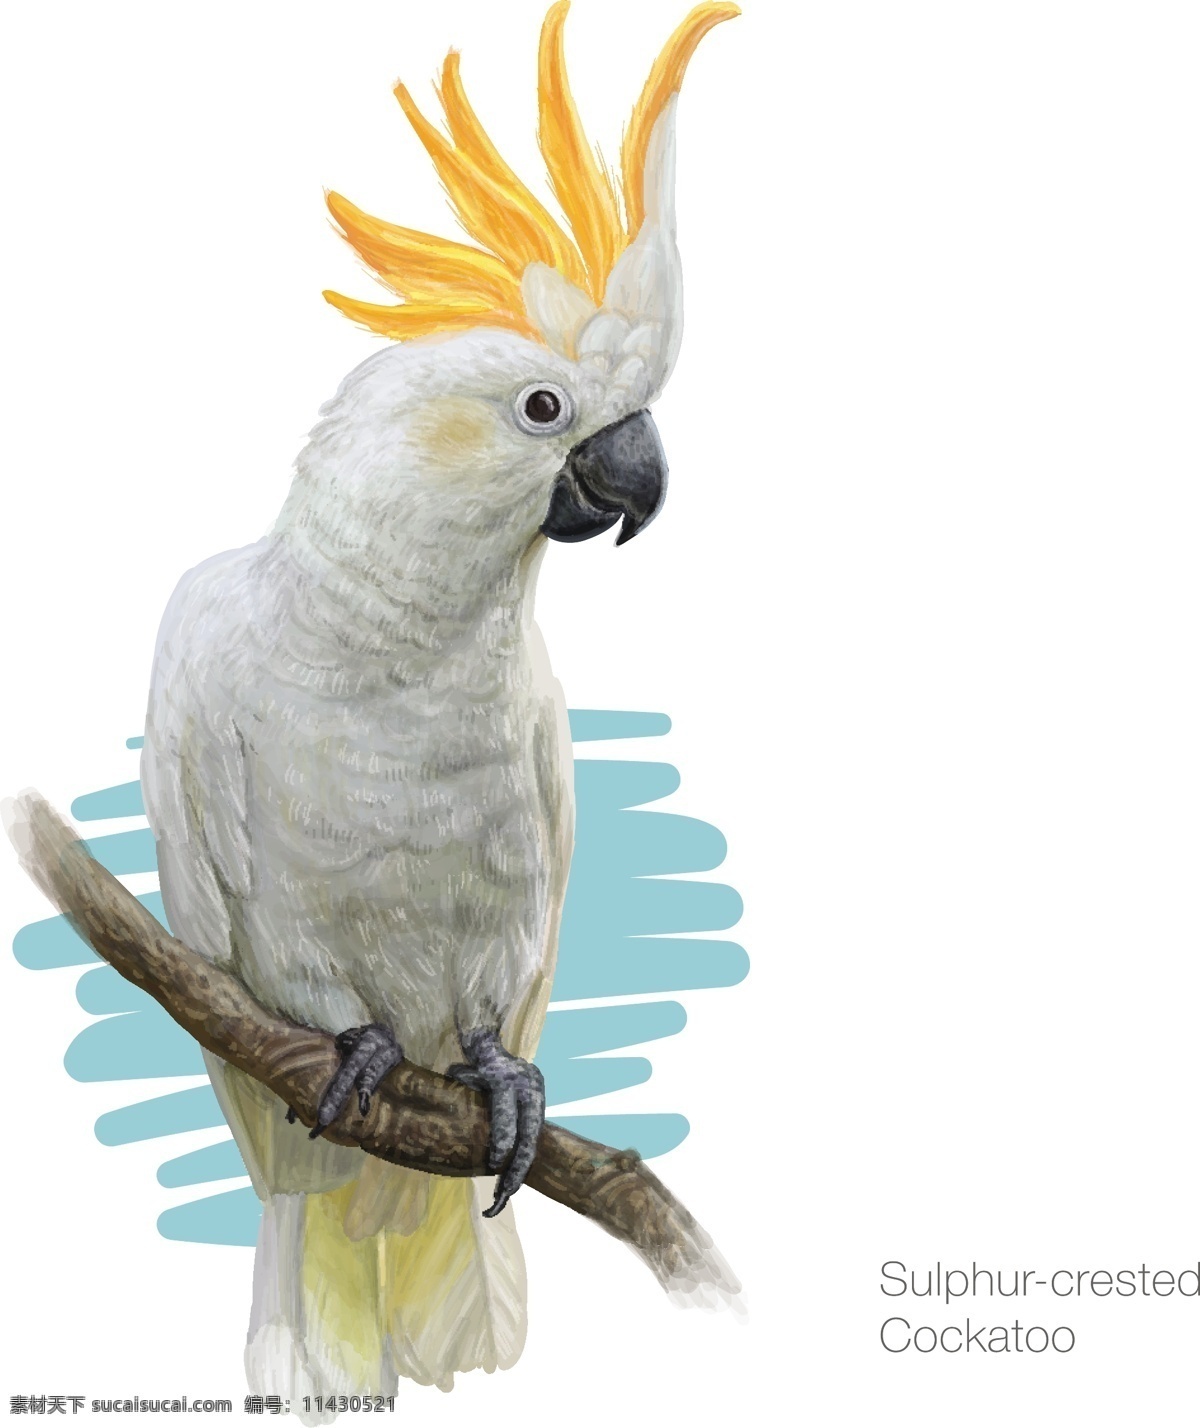 白鹦鹉 凤头鹦鹉 八哥 金刚鹦鹉 鸟类 设计素材 背景图片 卡通鸟类 手绘鸟类 装饰画 无框画 生物世界